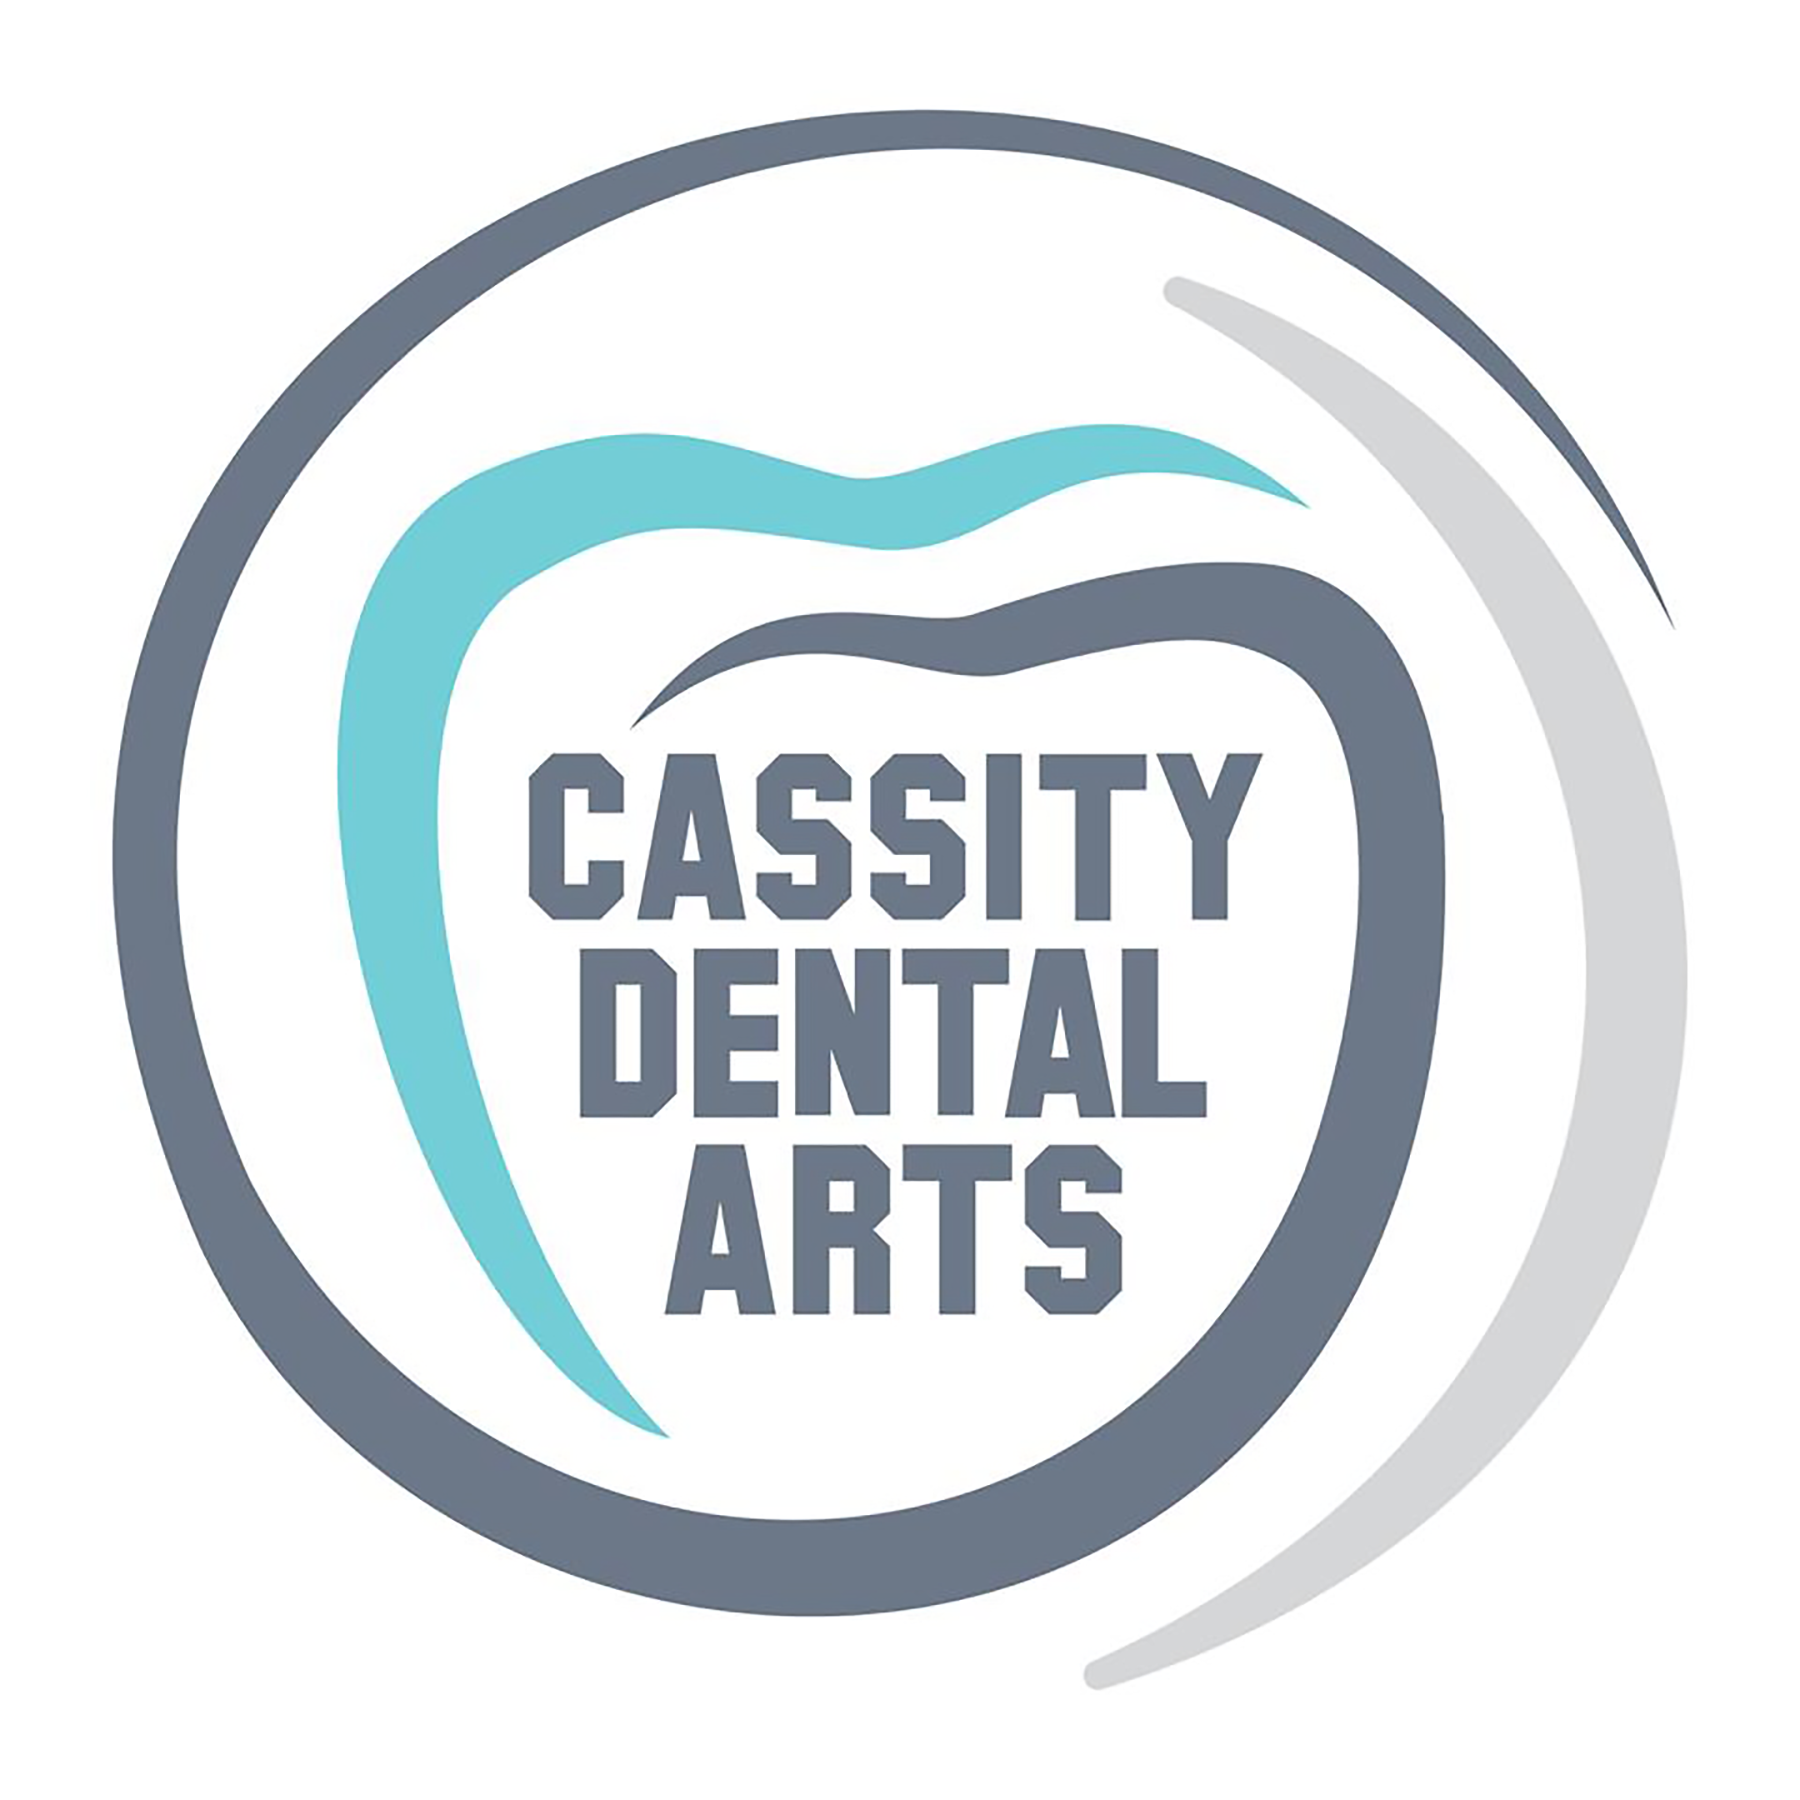 Cassity Dental Arts